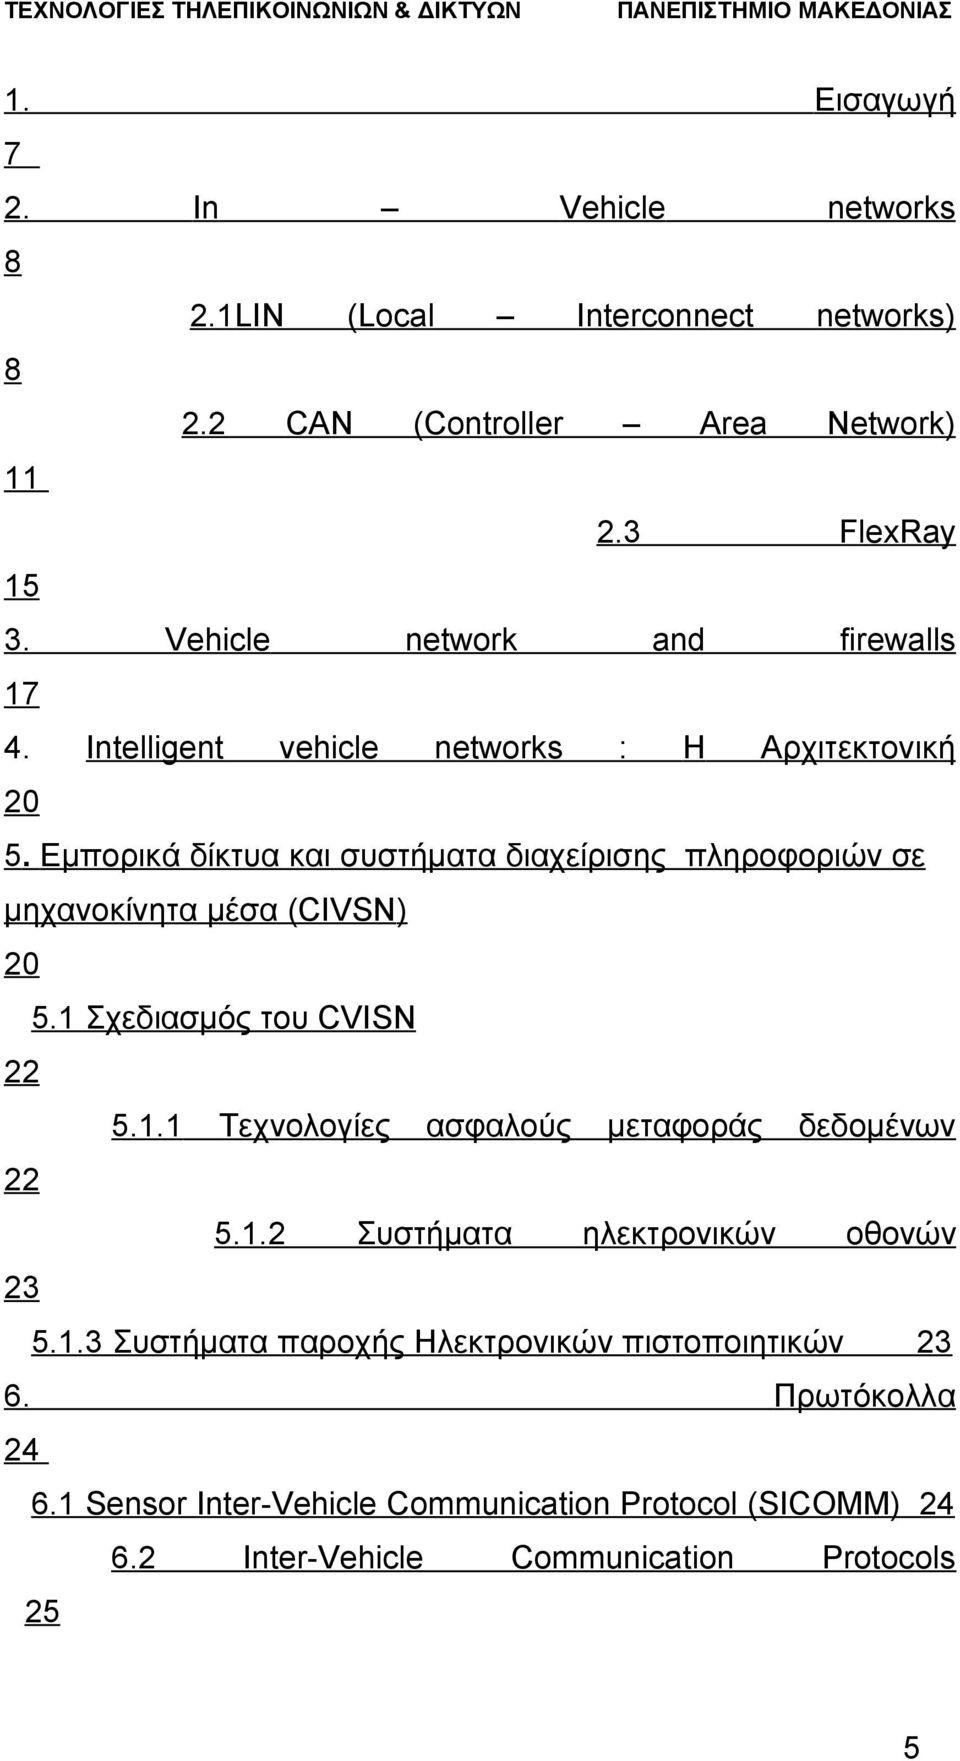 Εμπορικά δίκτυα και συστήματα διαχείρισης πληροφοριών σε μηχανοκίνητα μέσα (CIVSN) 20 5.1 Σχεδιασμός του CVISN 22 5.1.1 Τεχνολογίες ασφαλούς μεταφοράς δεδομένων 22 5.